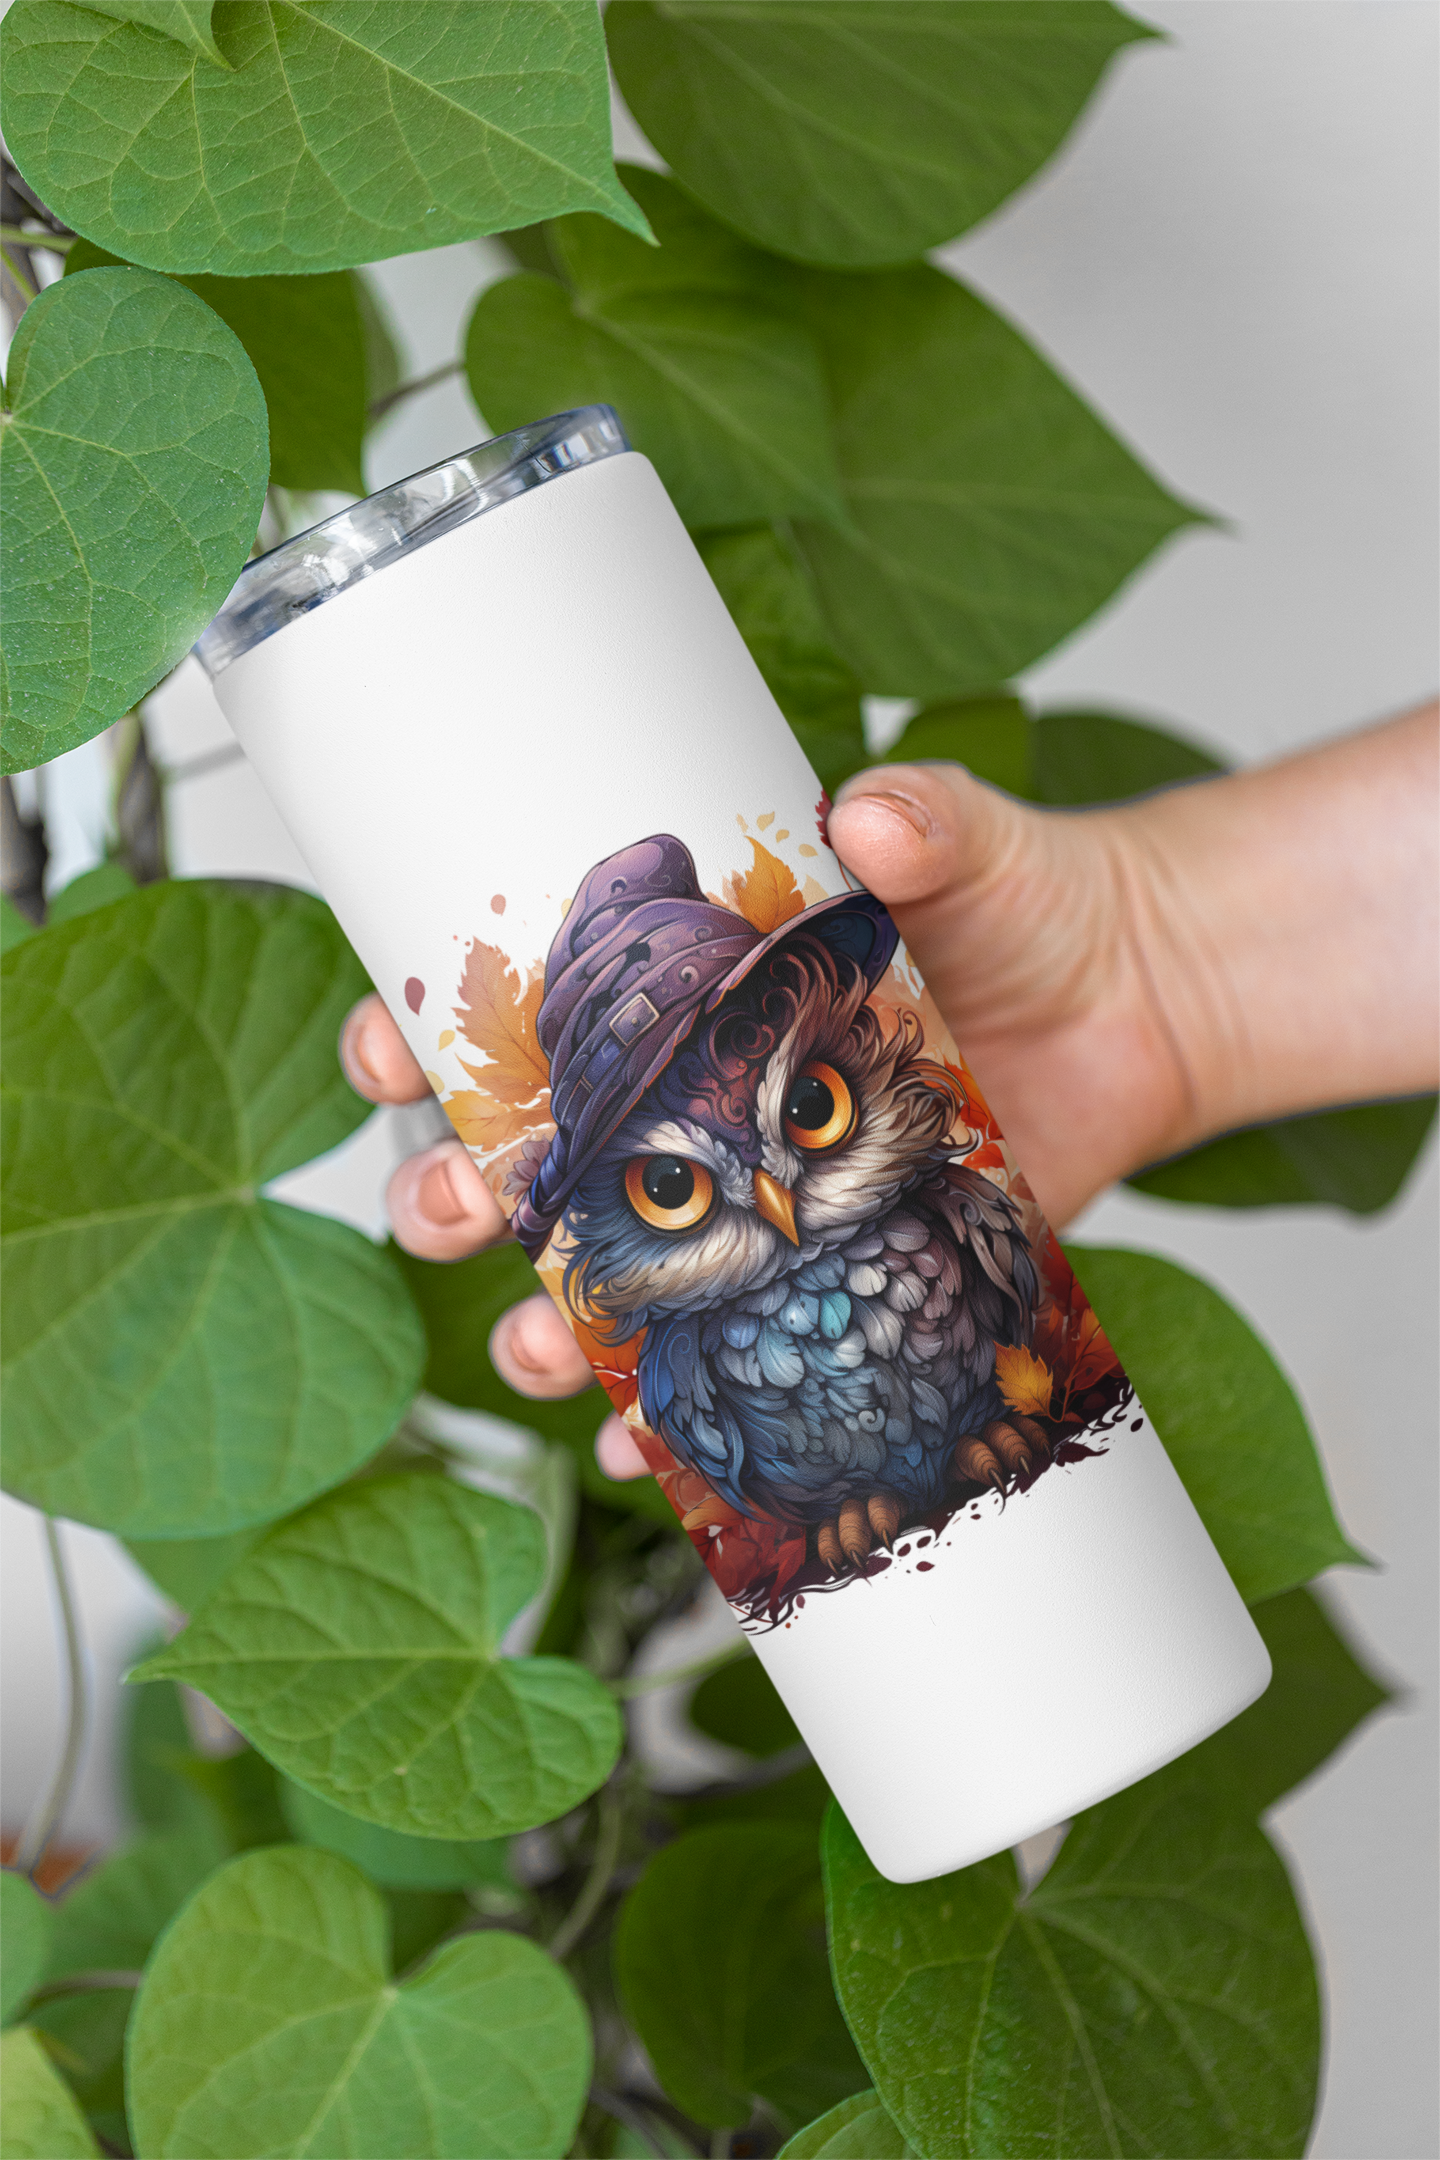 Cute Owls Clipart - CraftNest